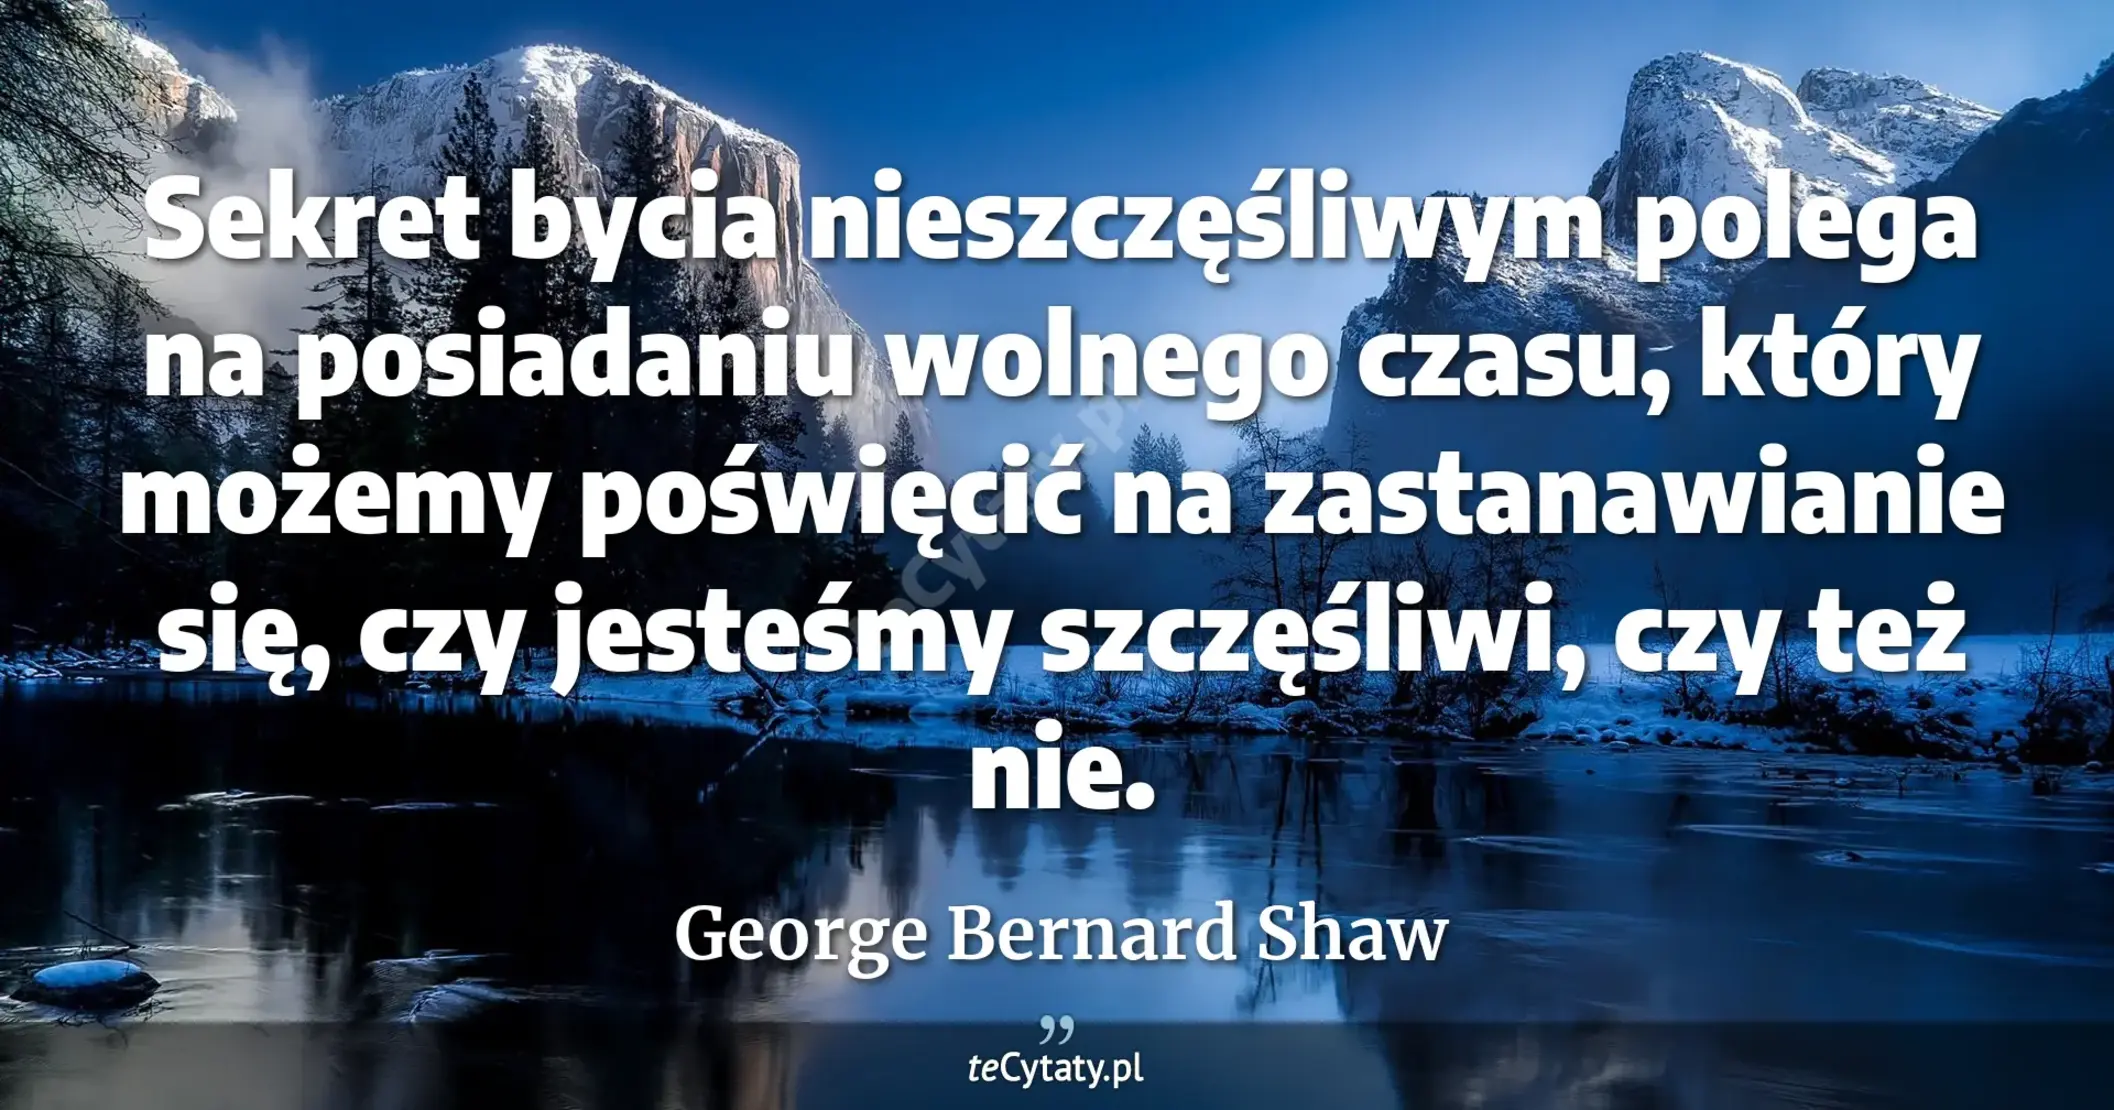 Sekret bycia nieszczęśliwym polega na posiadaniu wolnego czasu, który możemy poświęcić na zastanawianie się, czy jesteśmy szczęśliwi, czy też nie. - George Bernard Shaw